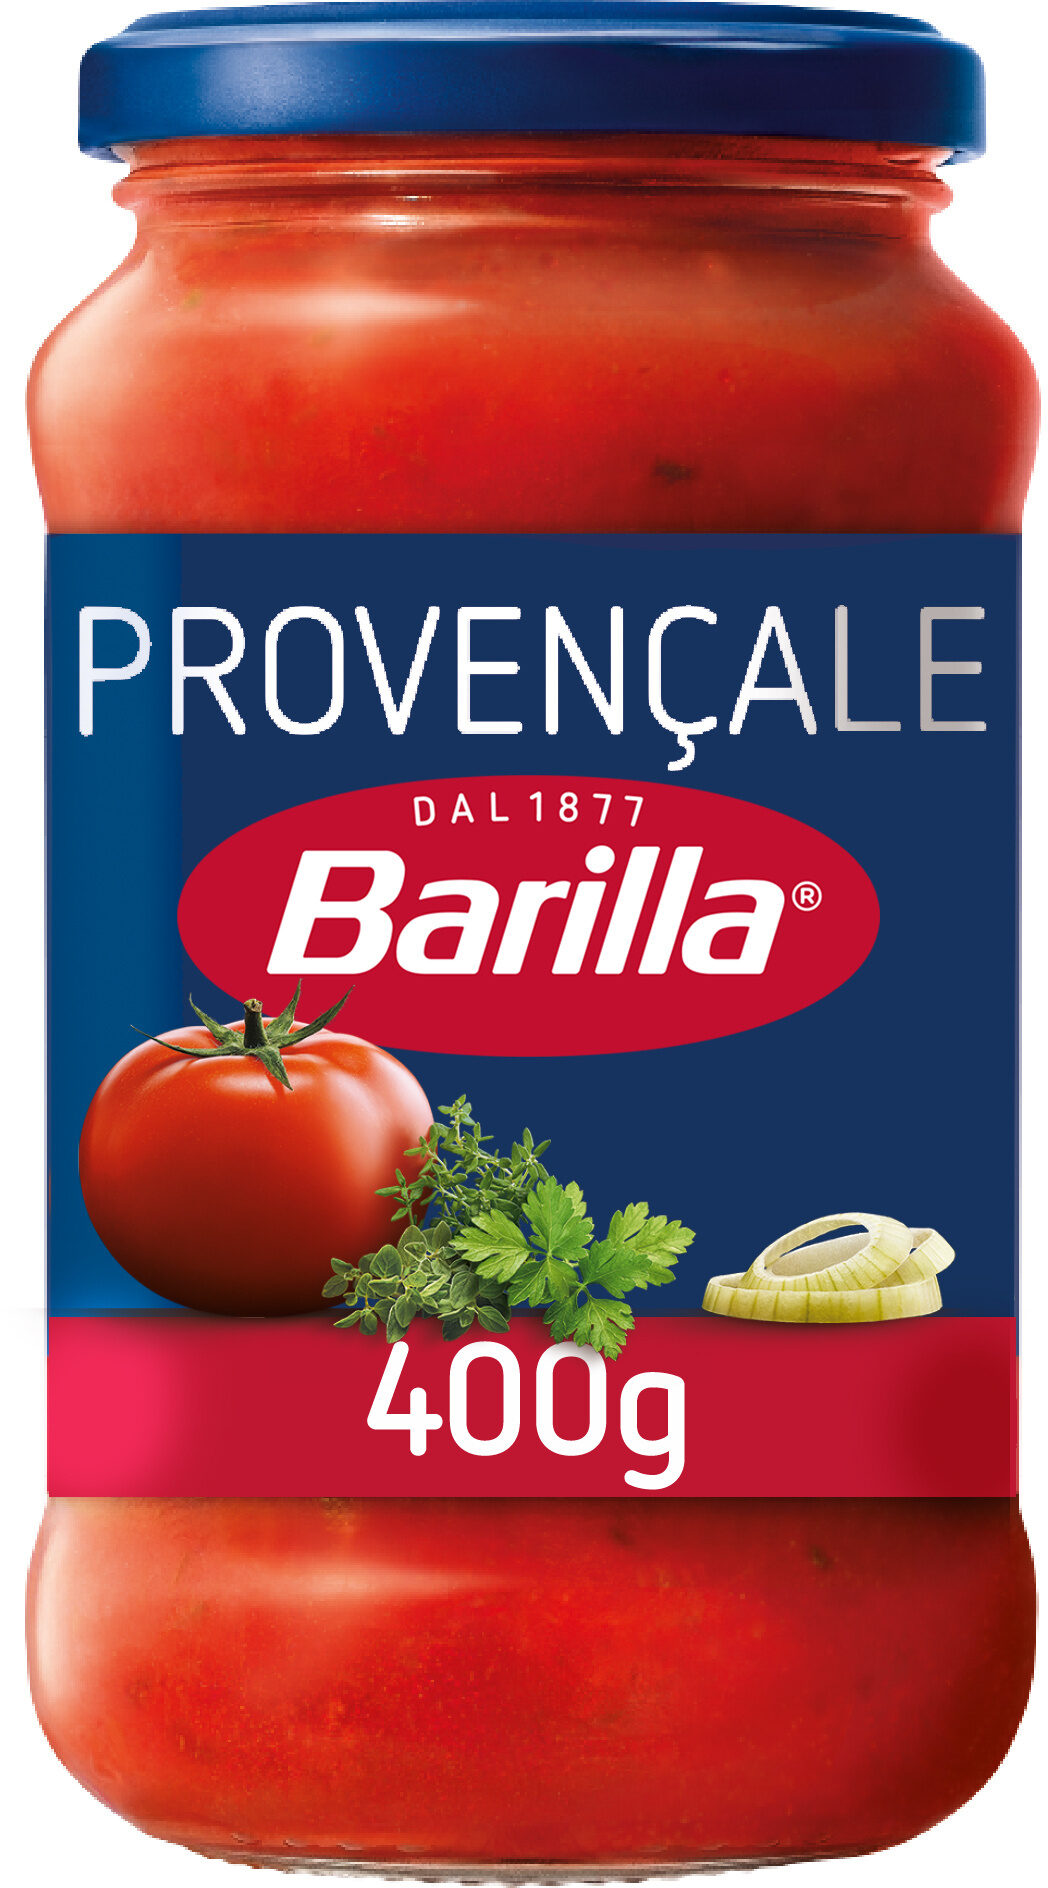 Barilla sauce tomates provencale 400g - Prodotto - fr